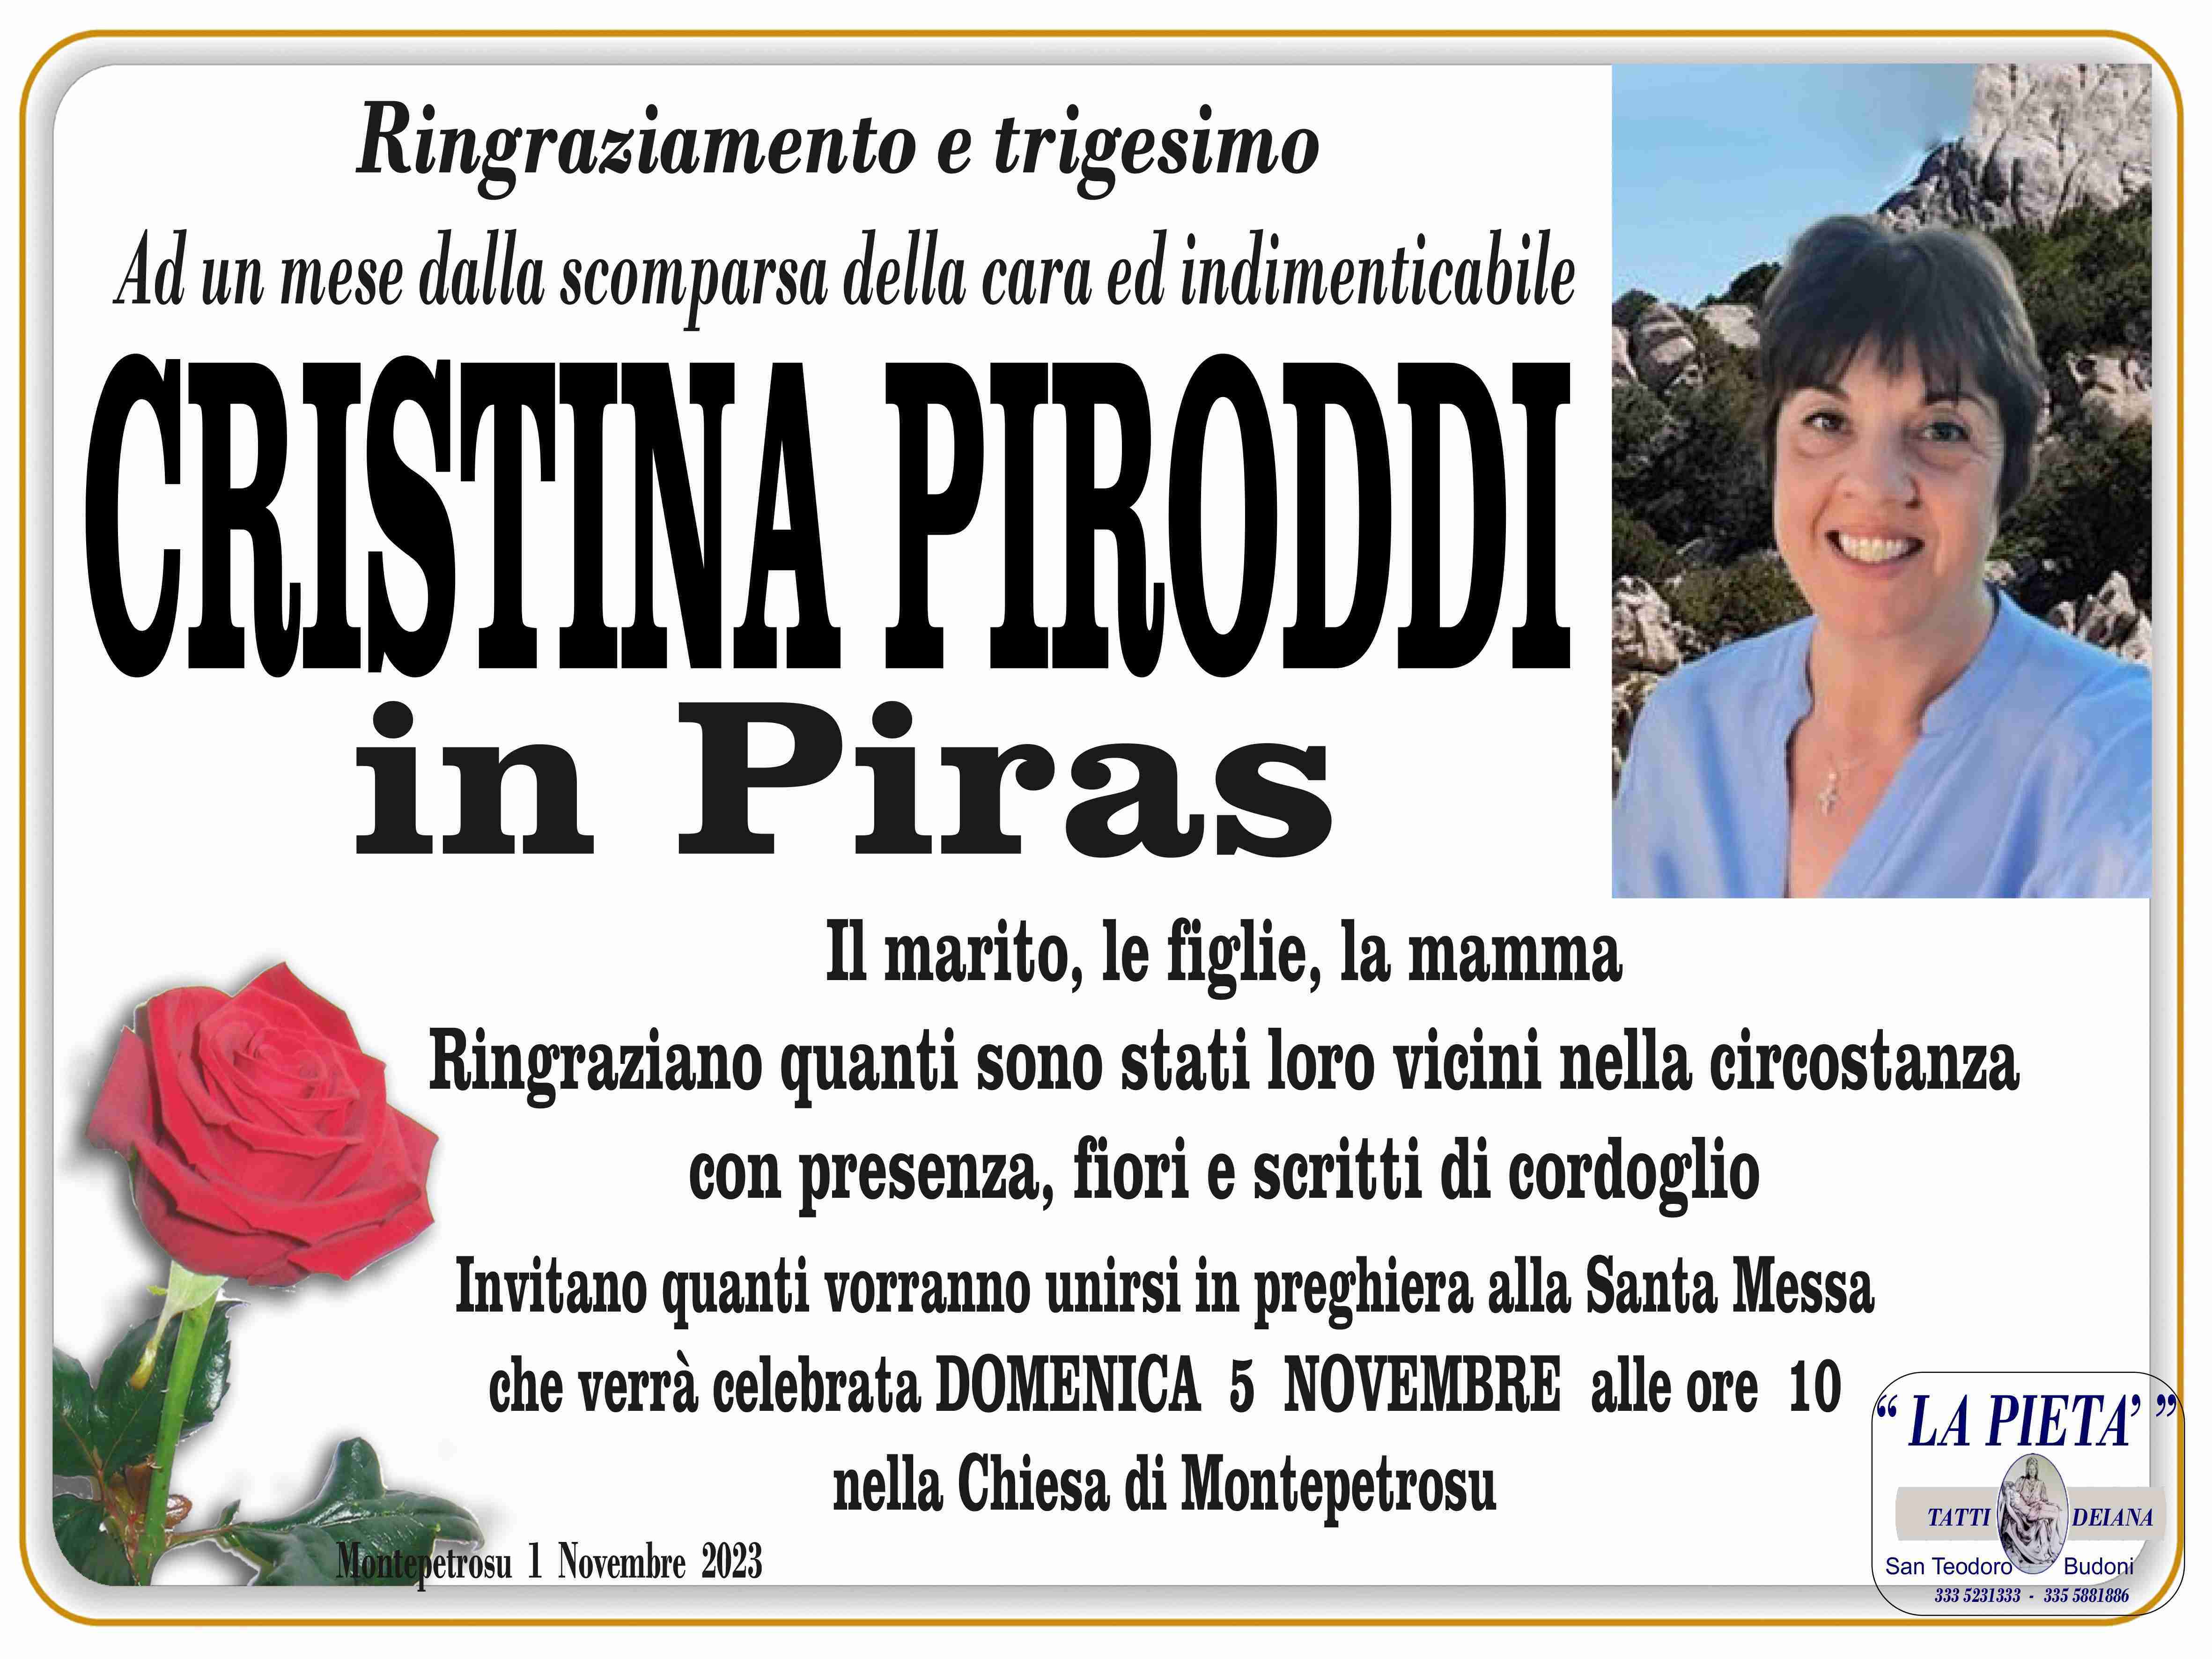 Cristina Piroddi